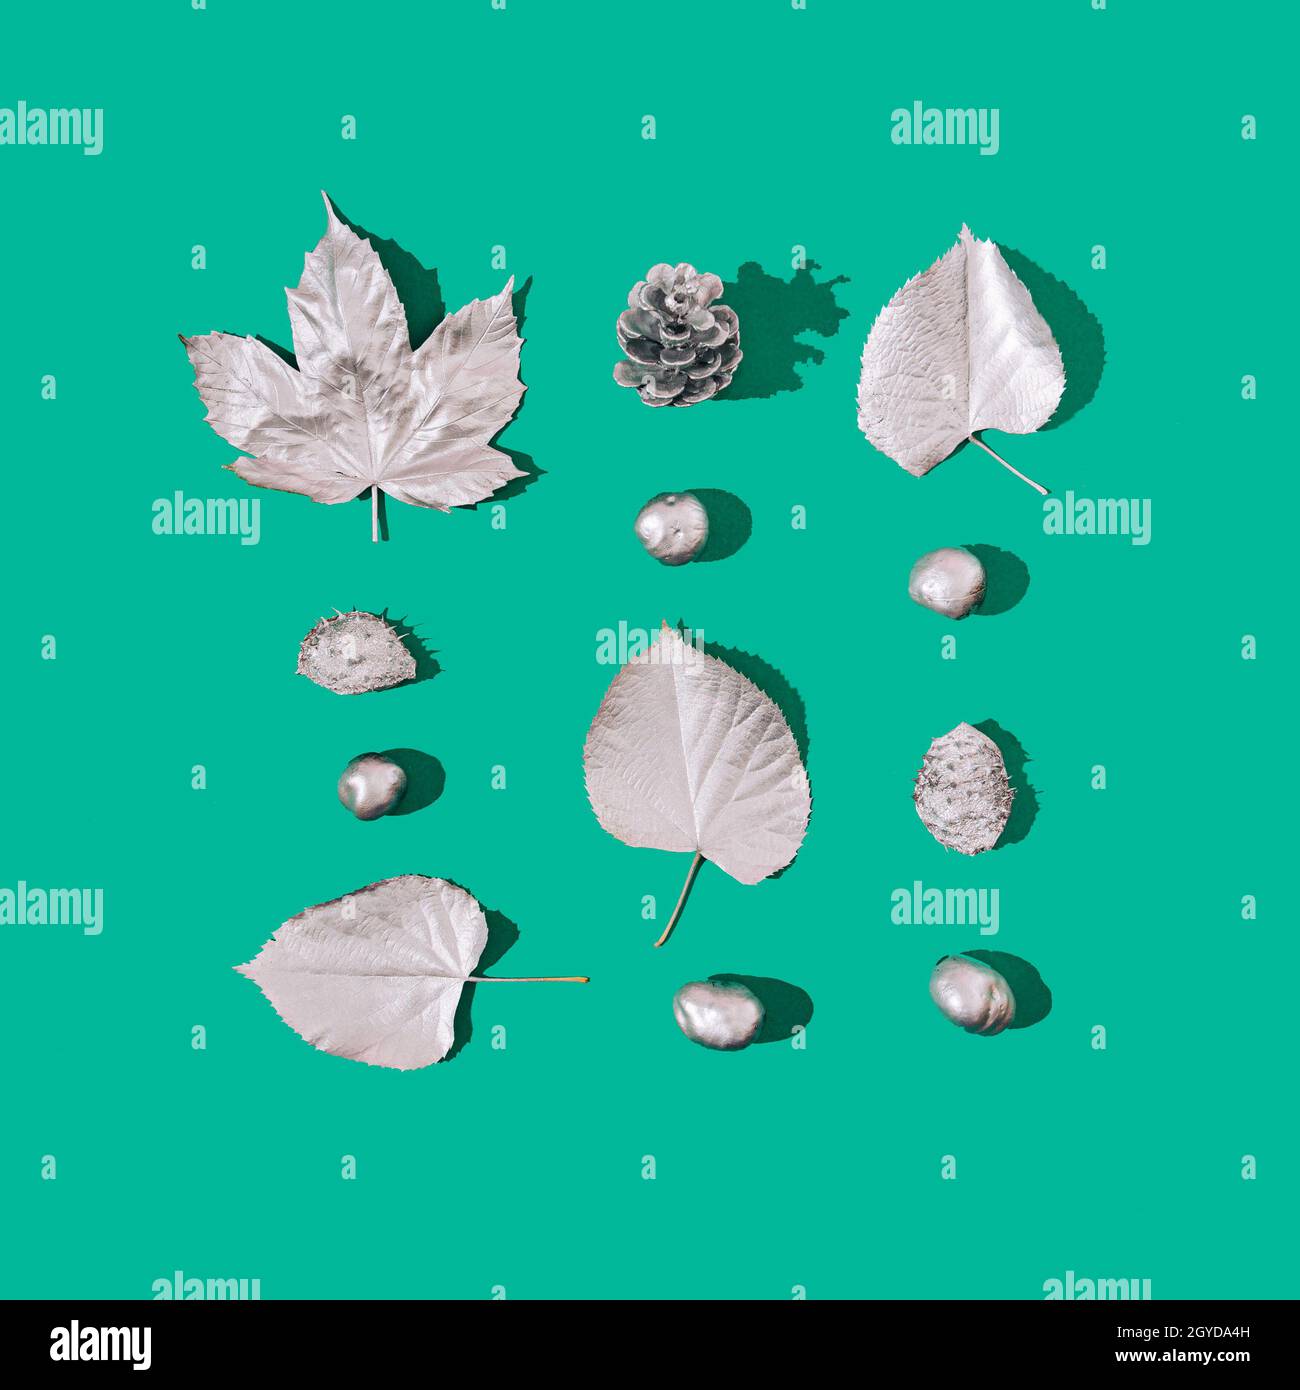 Une infographie faite de feuilles d'argent, de châtaignes et d'un cône de pin sur fond vert.Tendance futuriste des fêtes. Banque D'Images